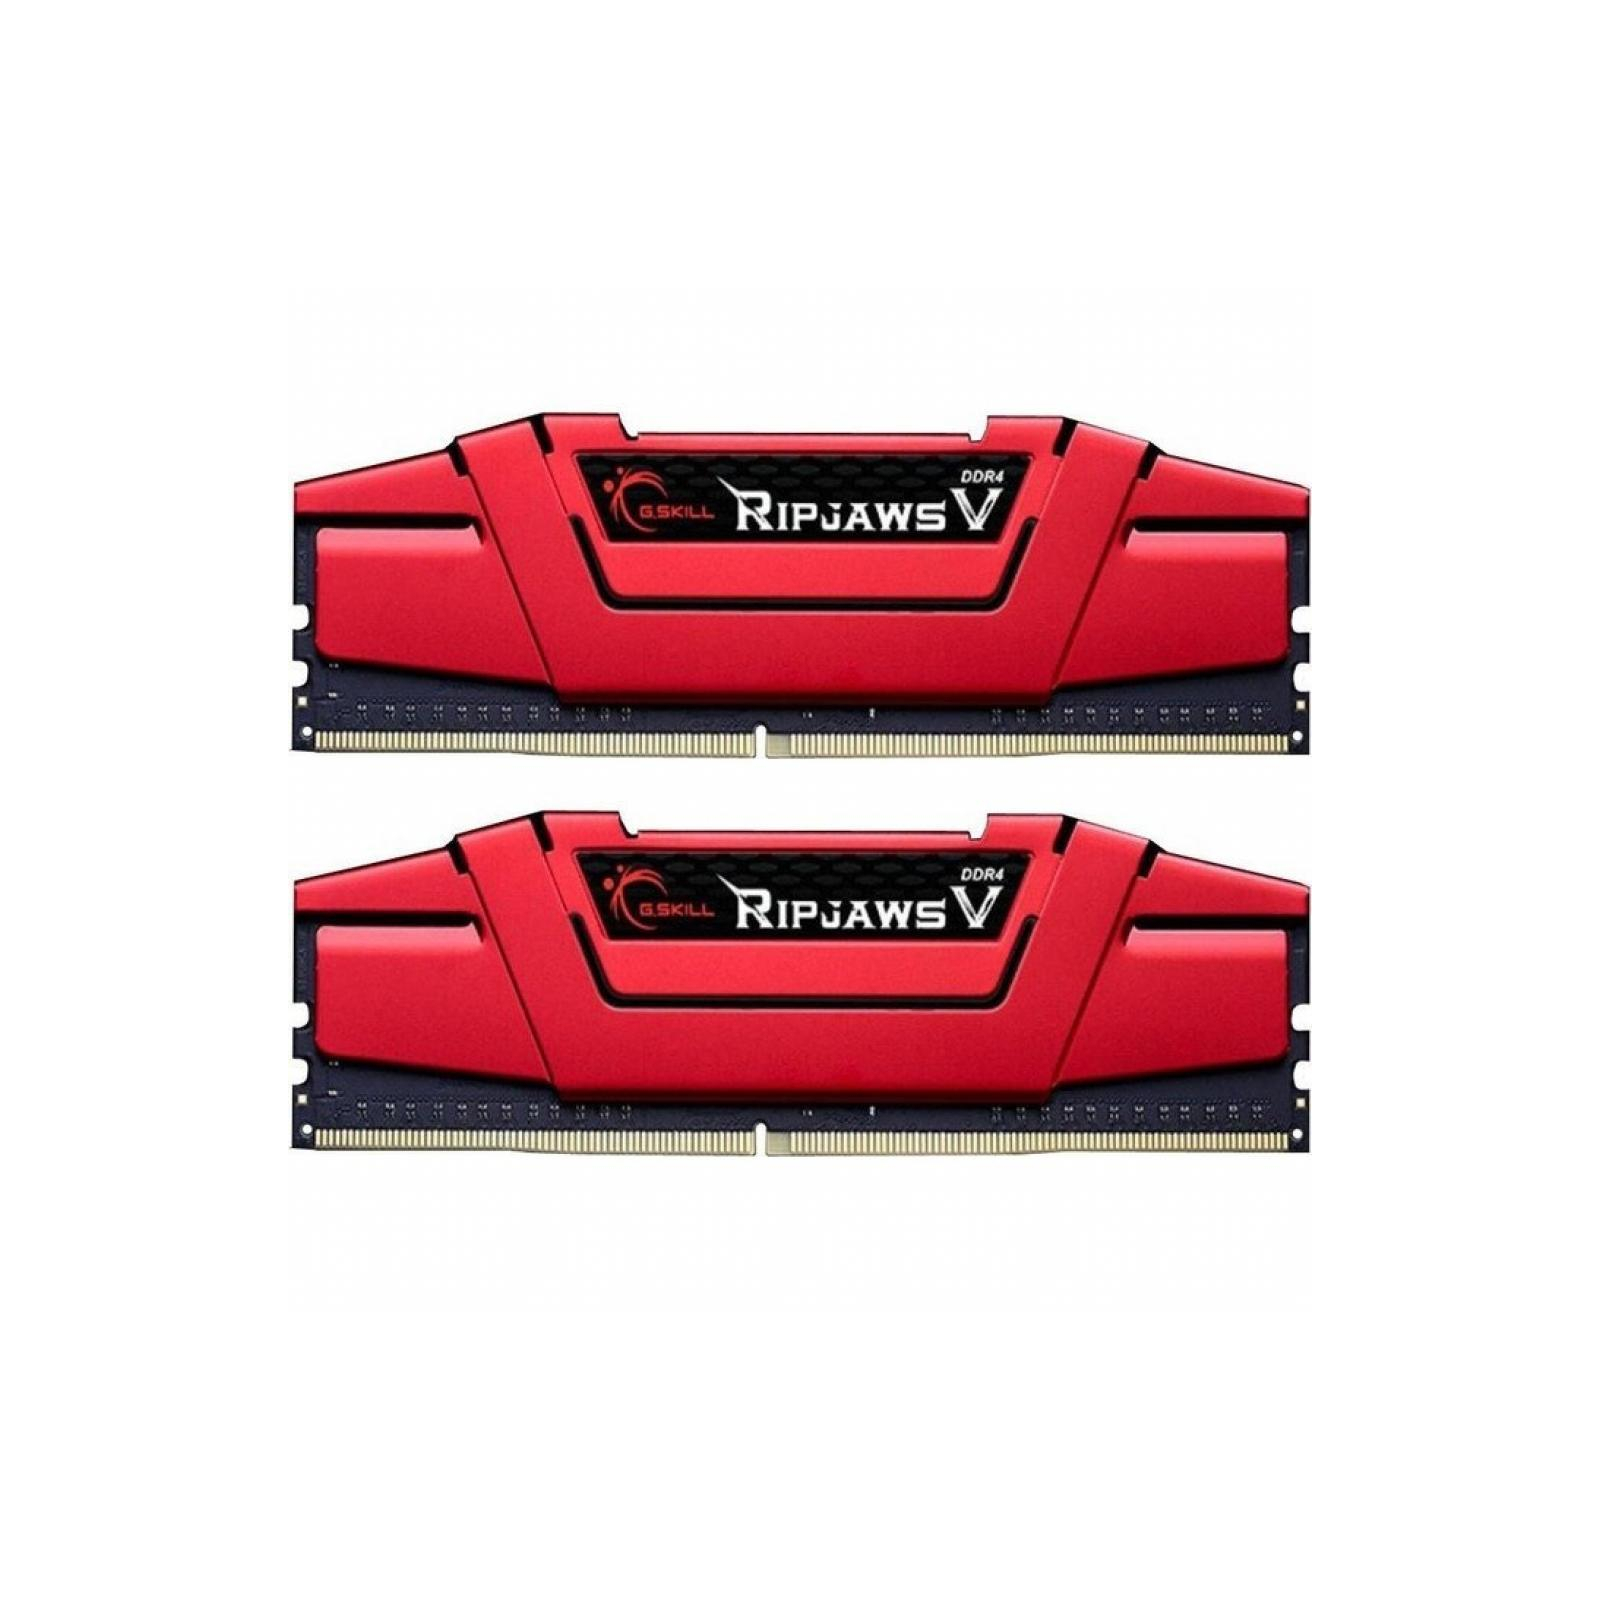 Модуль памяти для компьютера DDR4 8GB (2x4GB) 2400 MHz RIPJAWS V RED G.Skill (F4-2400C17D-8GVR)